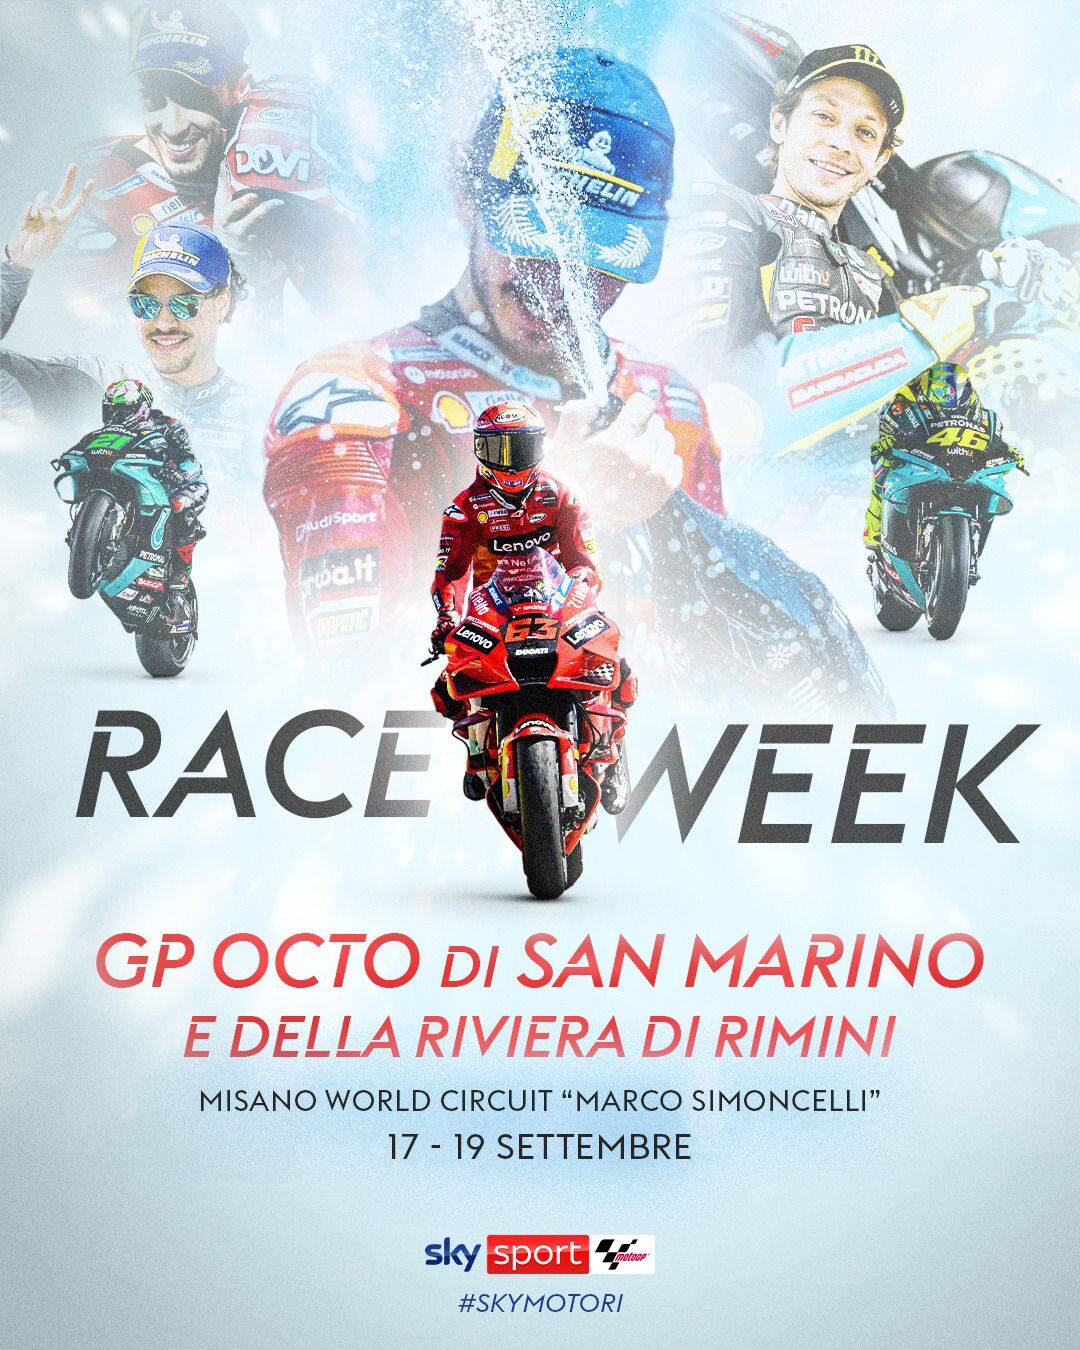 MotoGp, gli orari e dove vedere il Gp Misano (San Marino) 2021 in tv Sky Sport